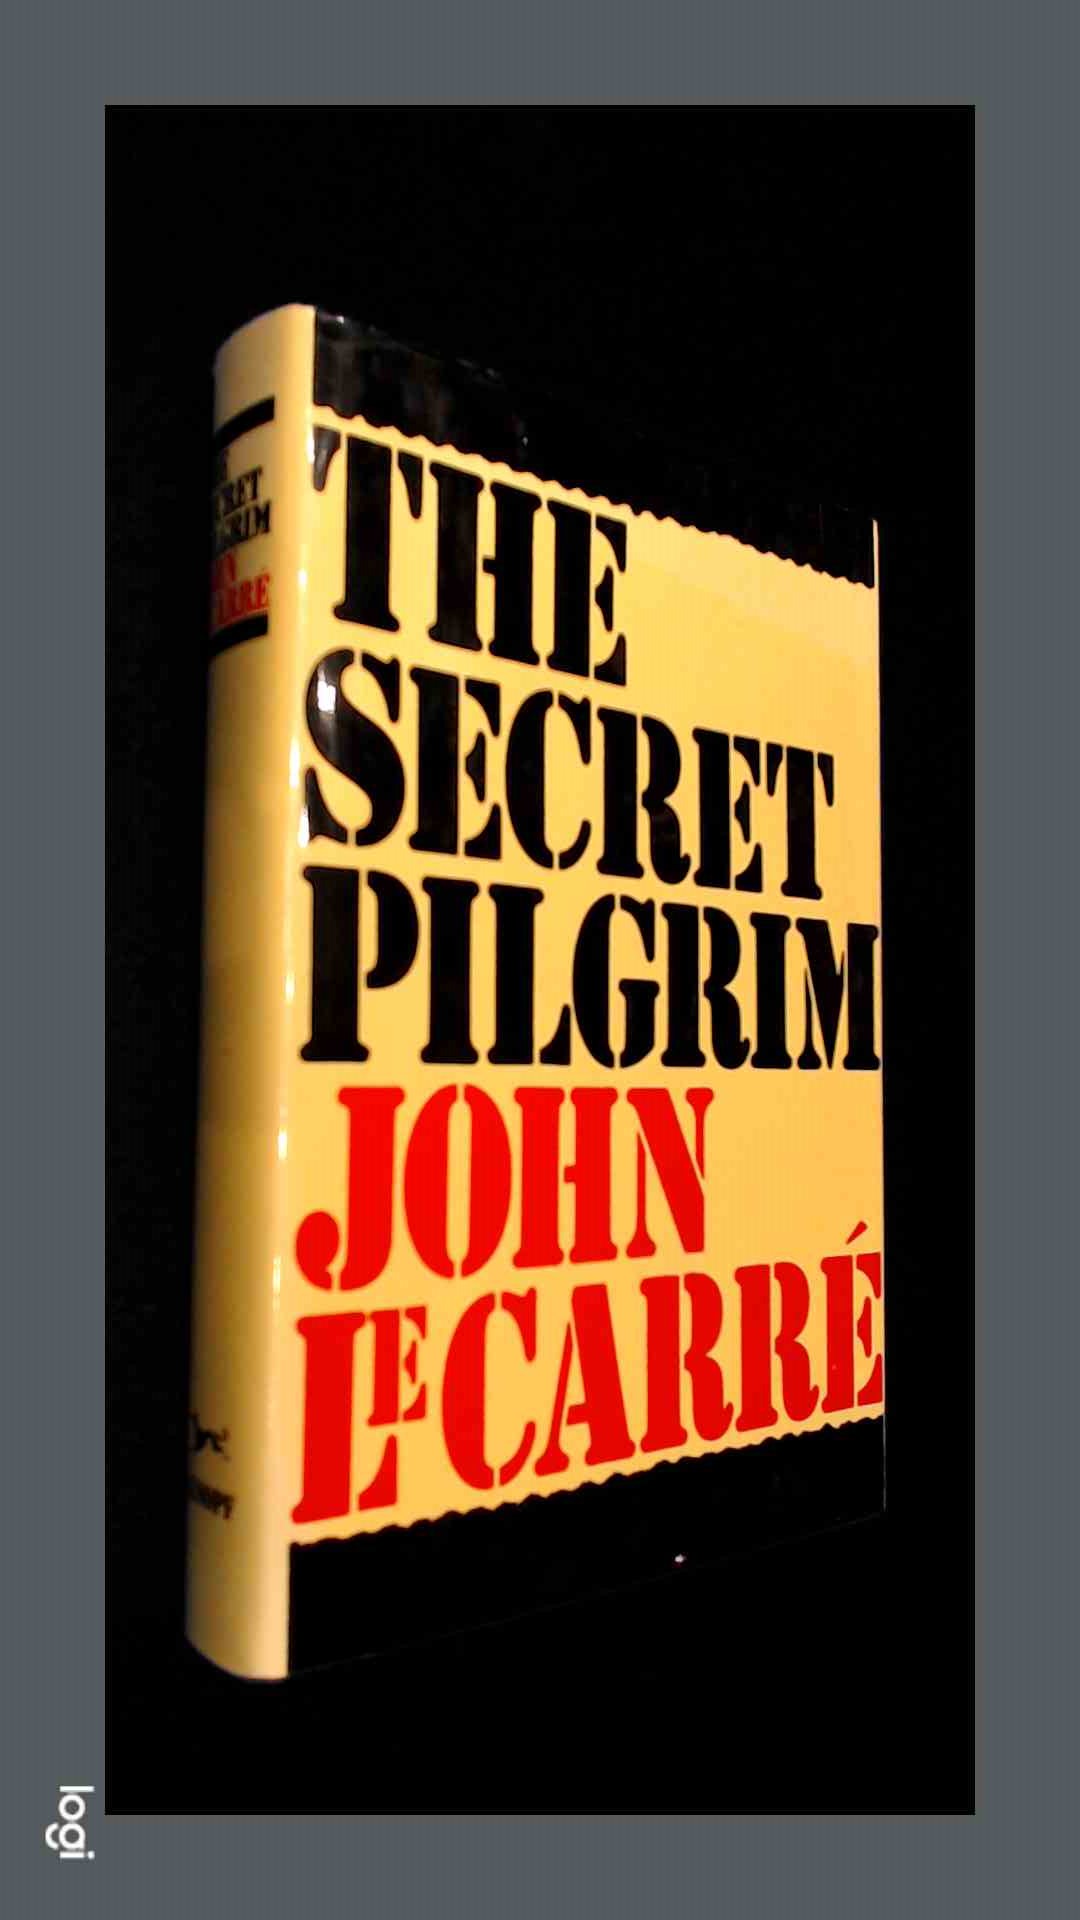 CARRE, JOHN LE - The secret pilgrim